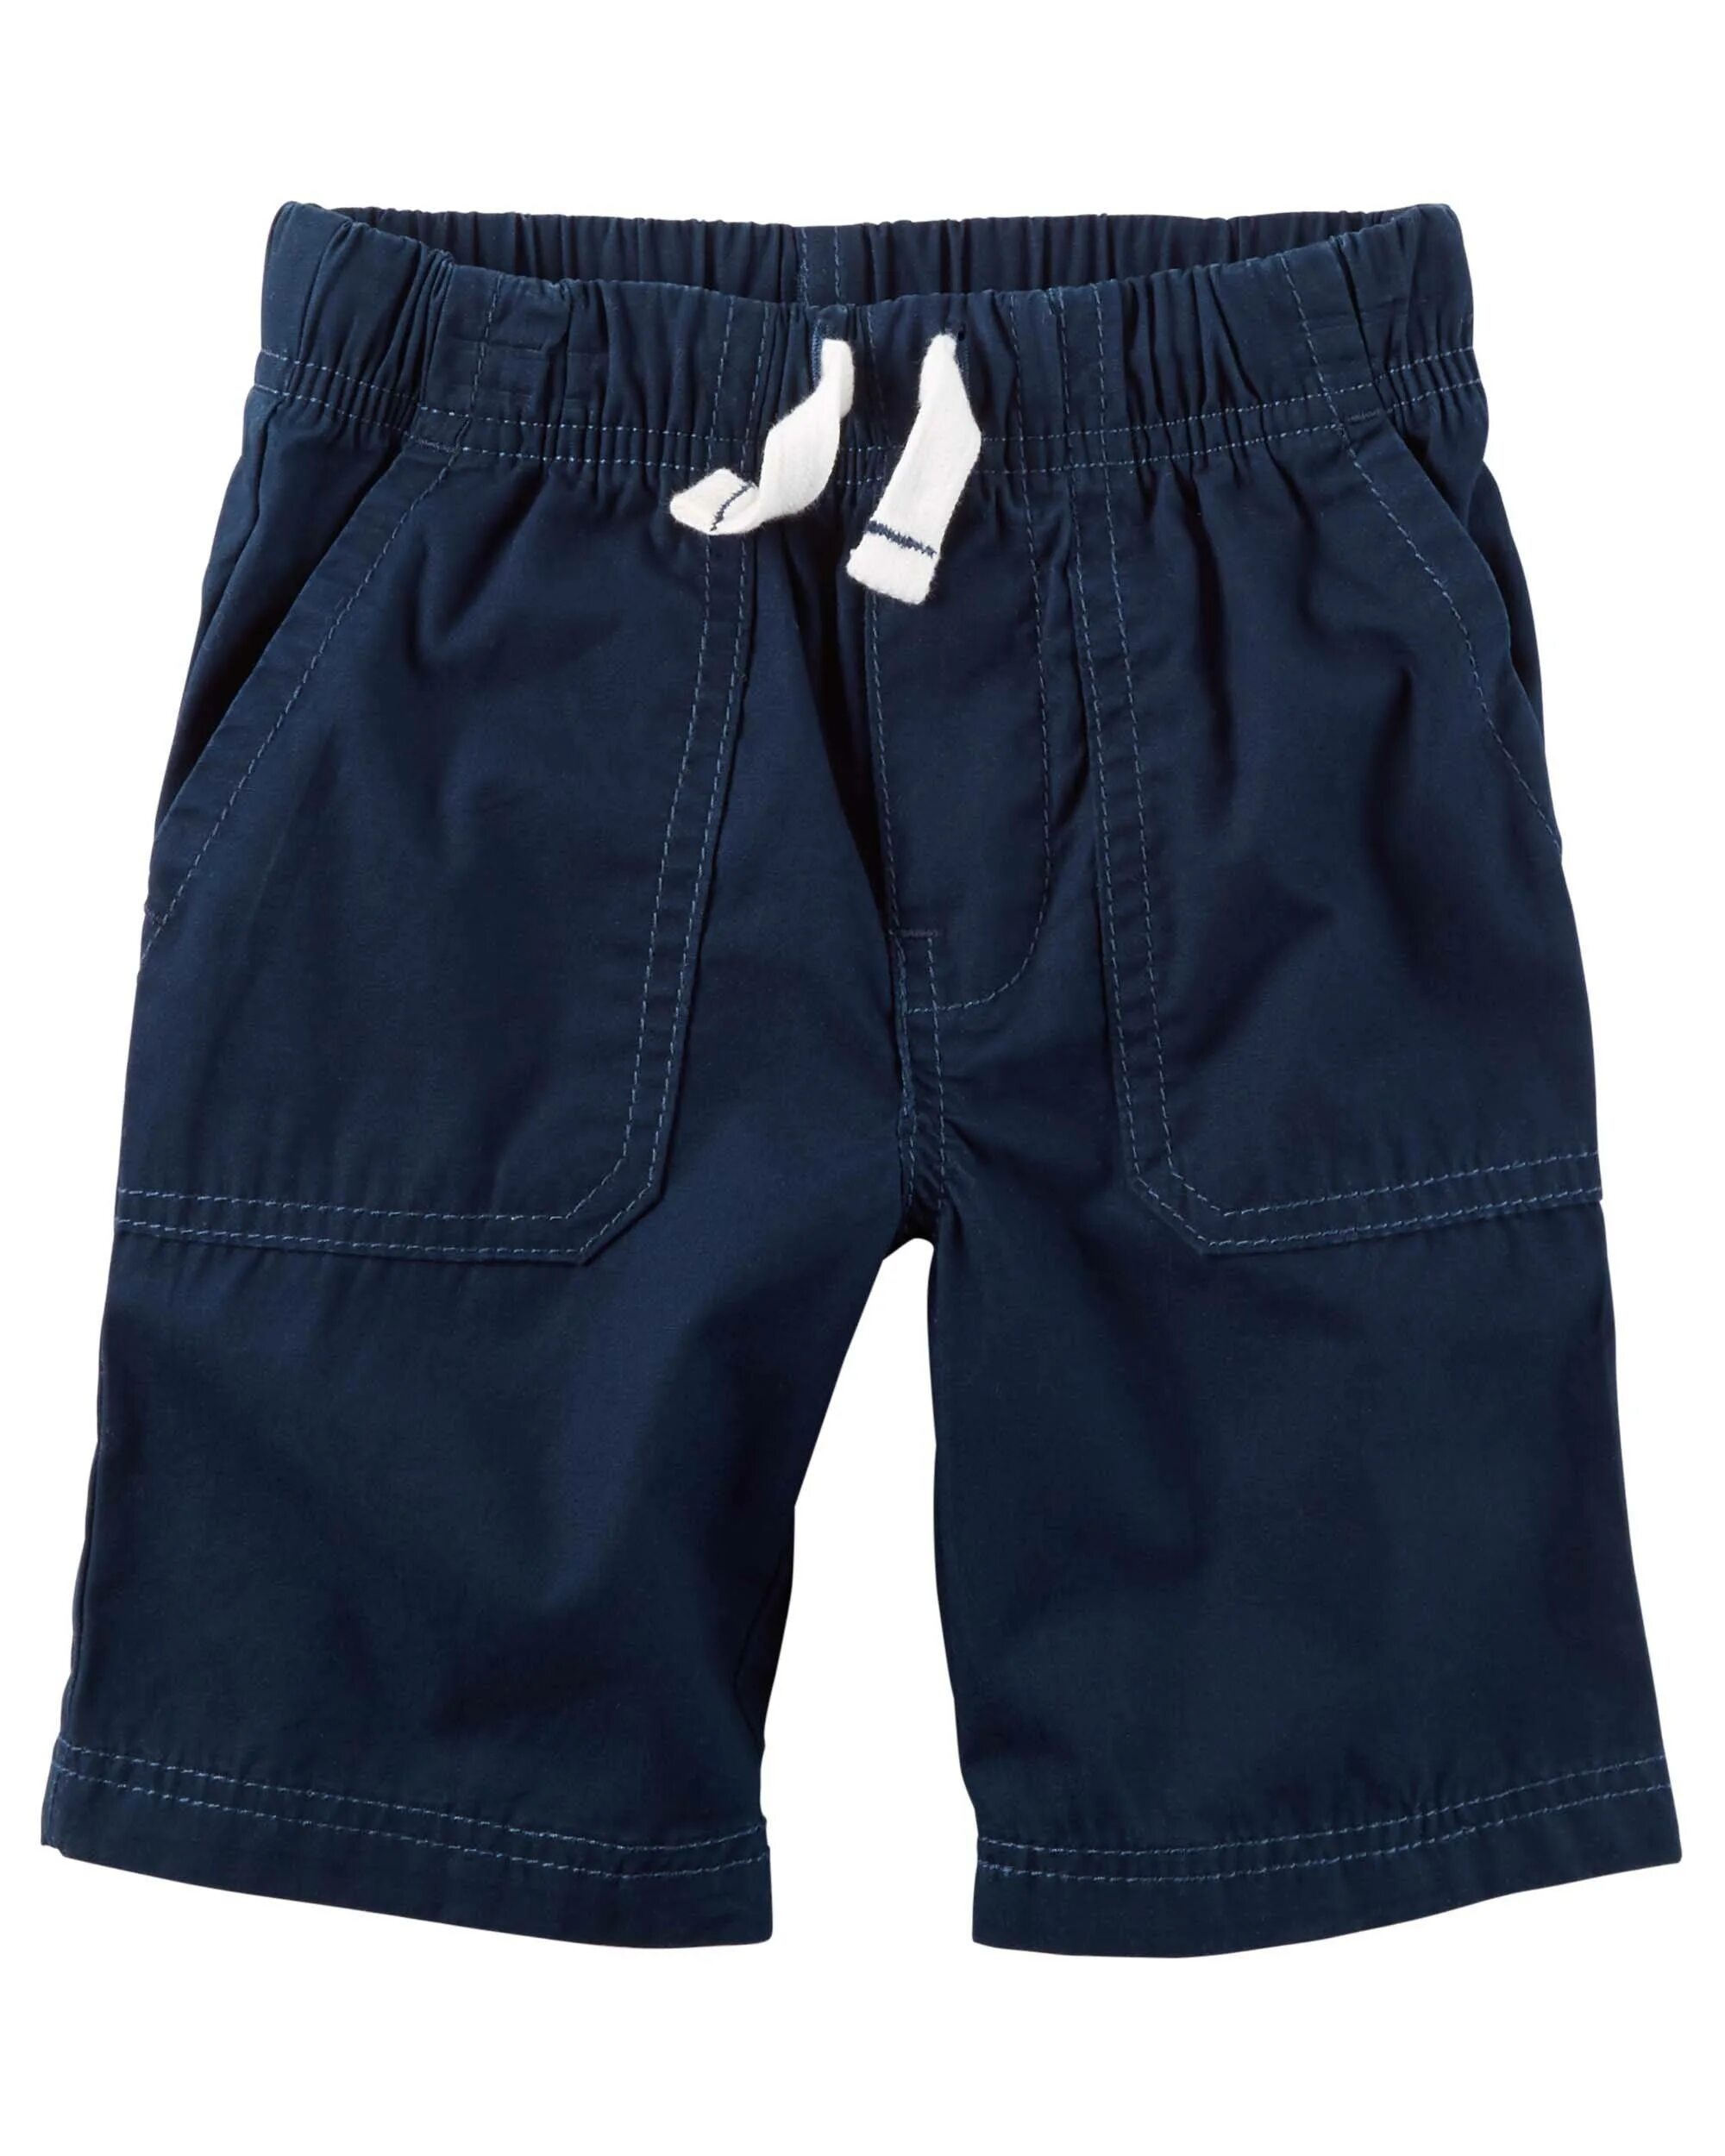 Шорты для мальчика Картерс. Carter's шорты для мальчика. Oshkosh бермуды для мальчика. Картерс юбка/шорты для детей.